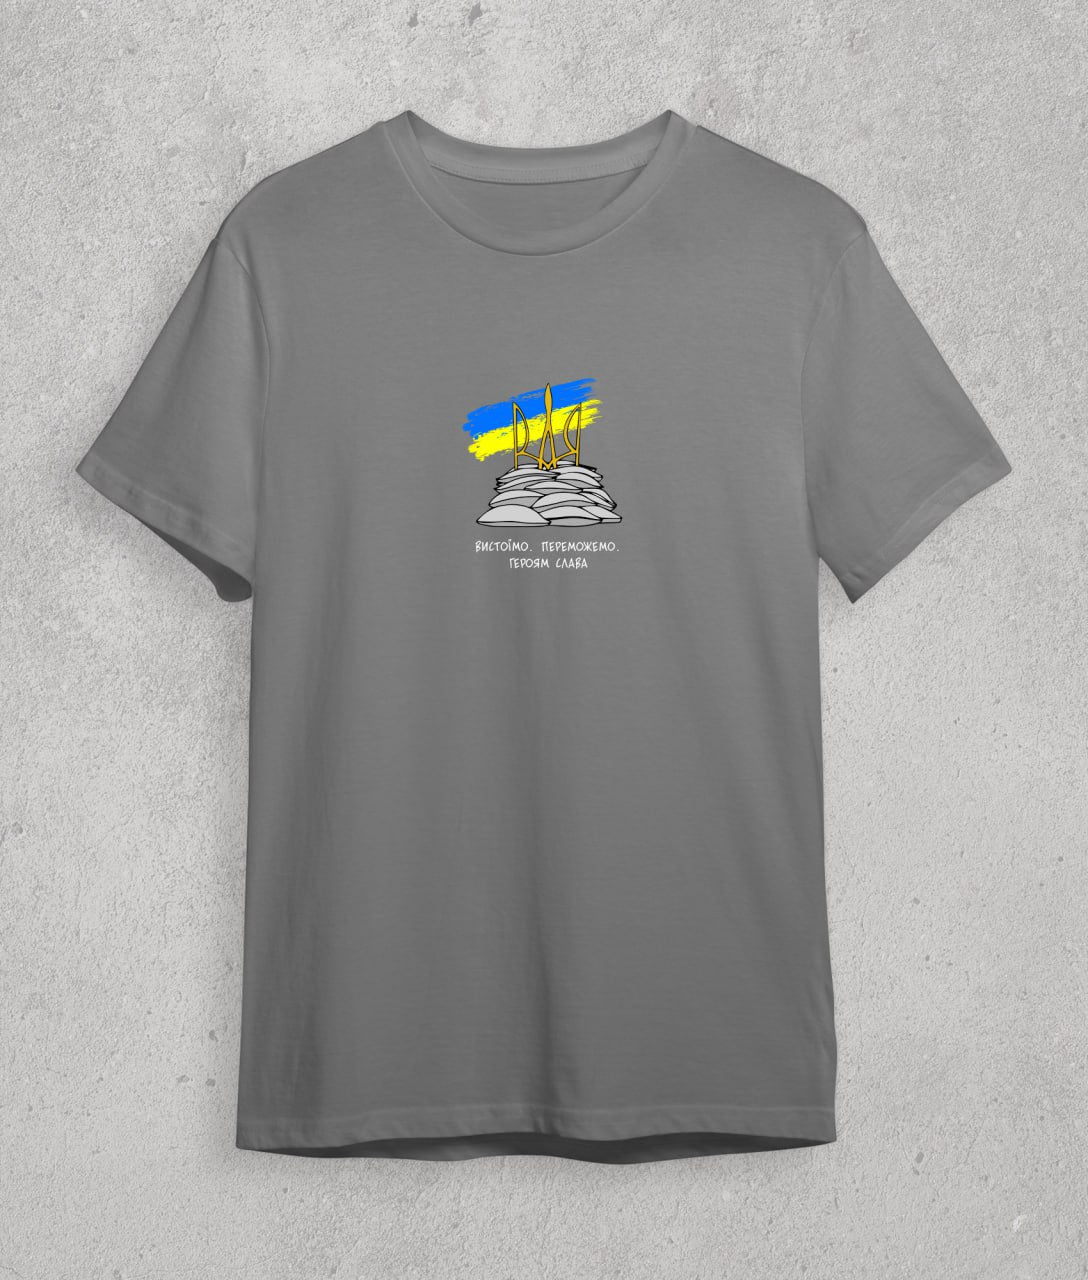 T-shirt Will stand. Will win. (ukr)